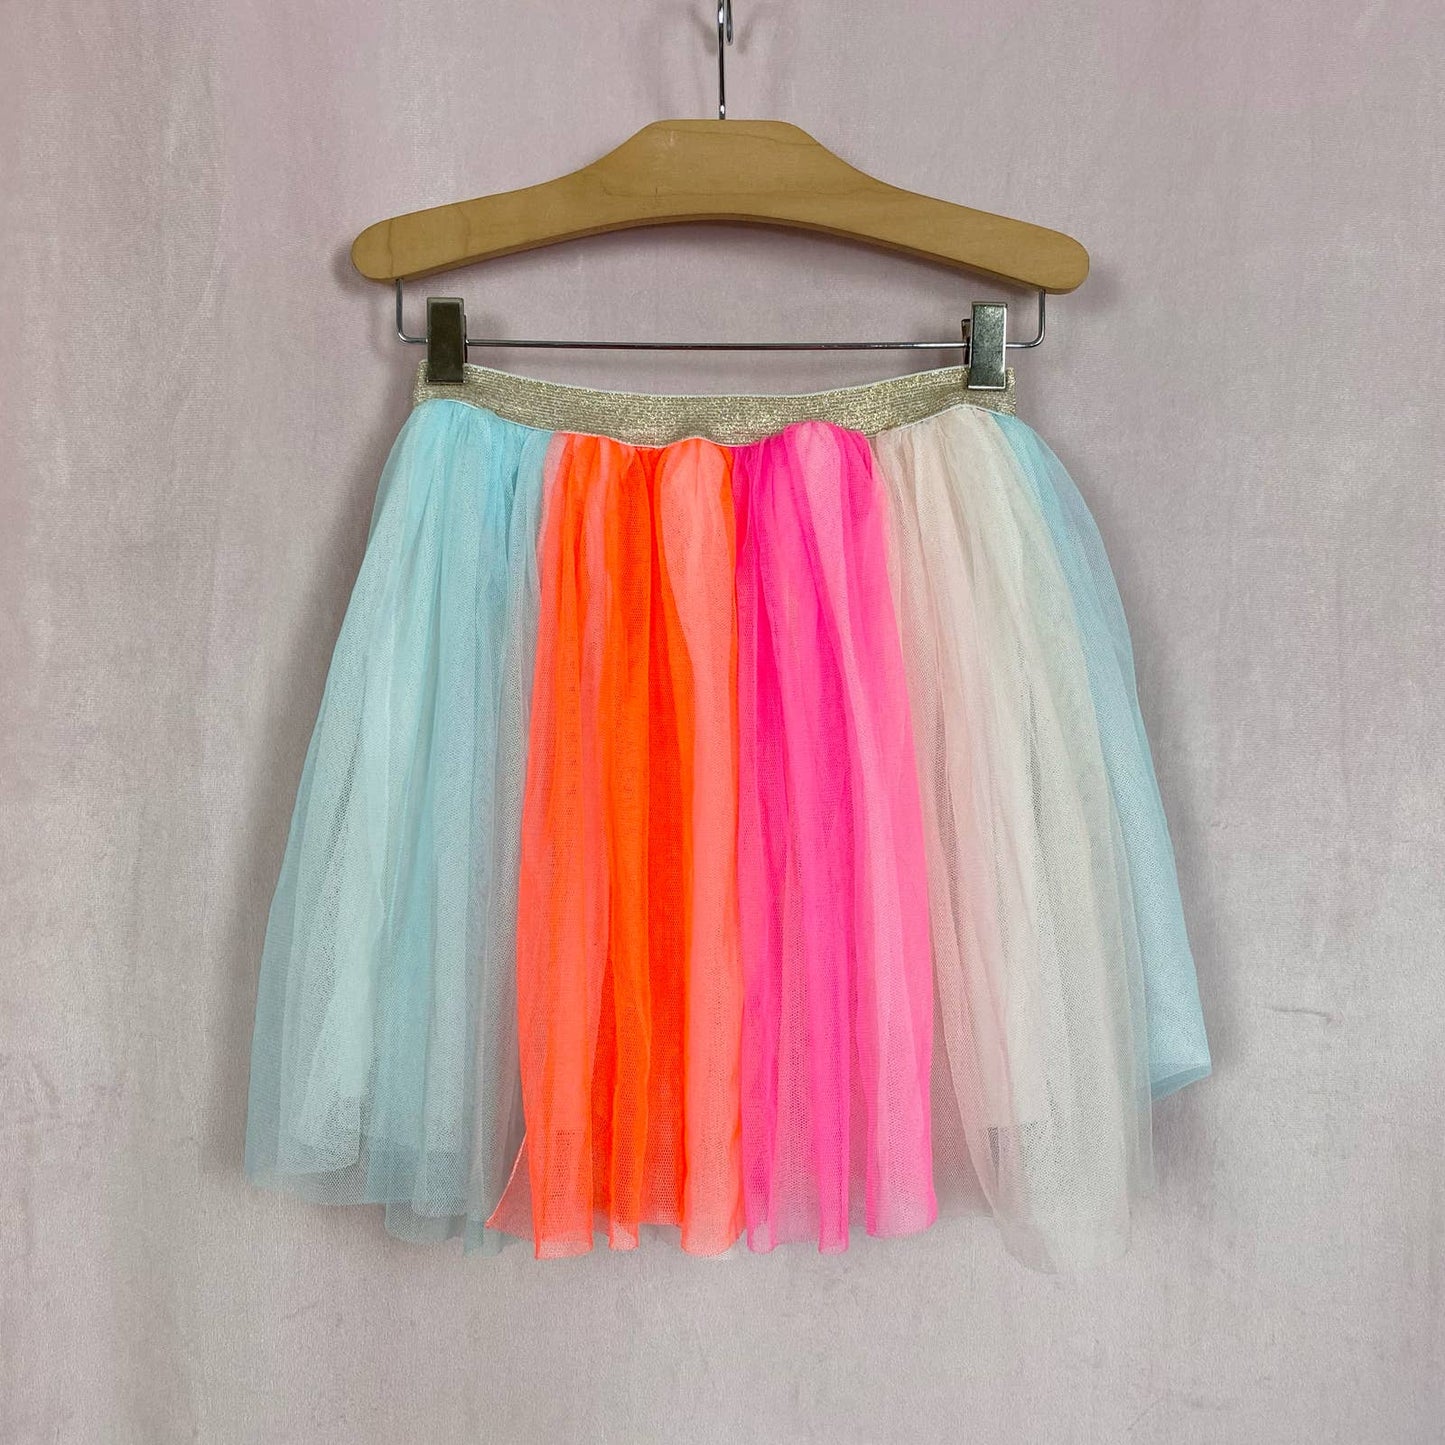 Secondhand Bright Striped Mini Tutu Tulle Skirt, Size XXS